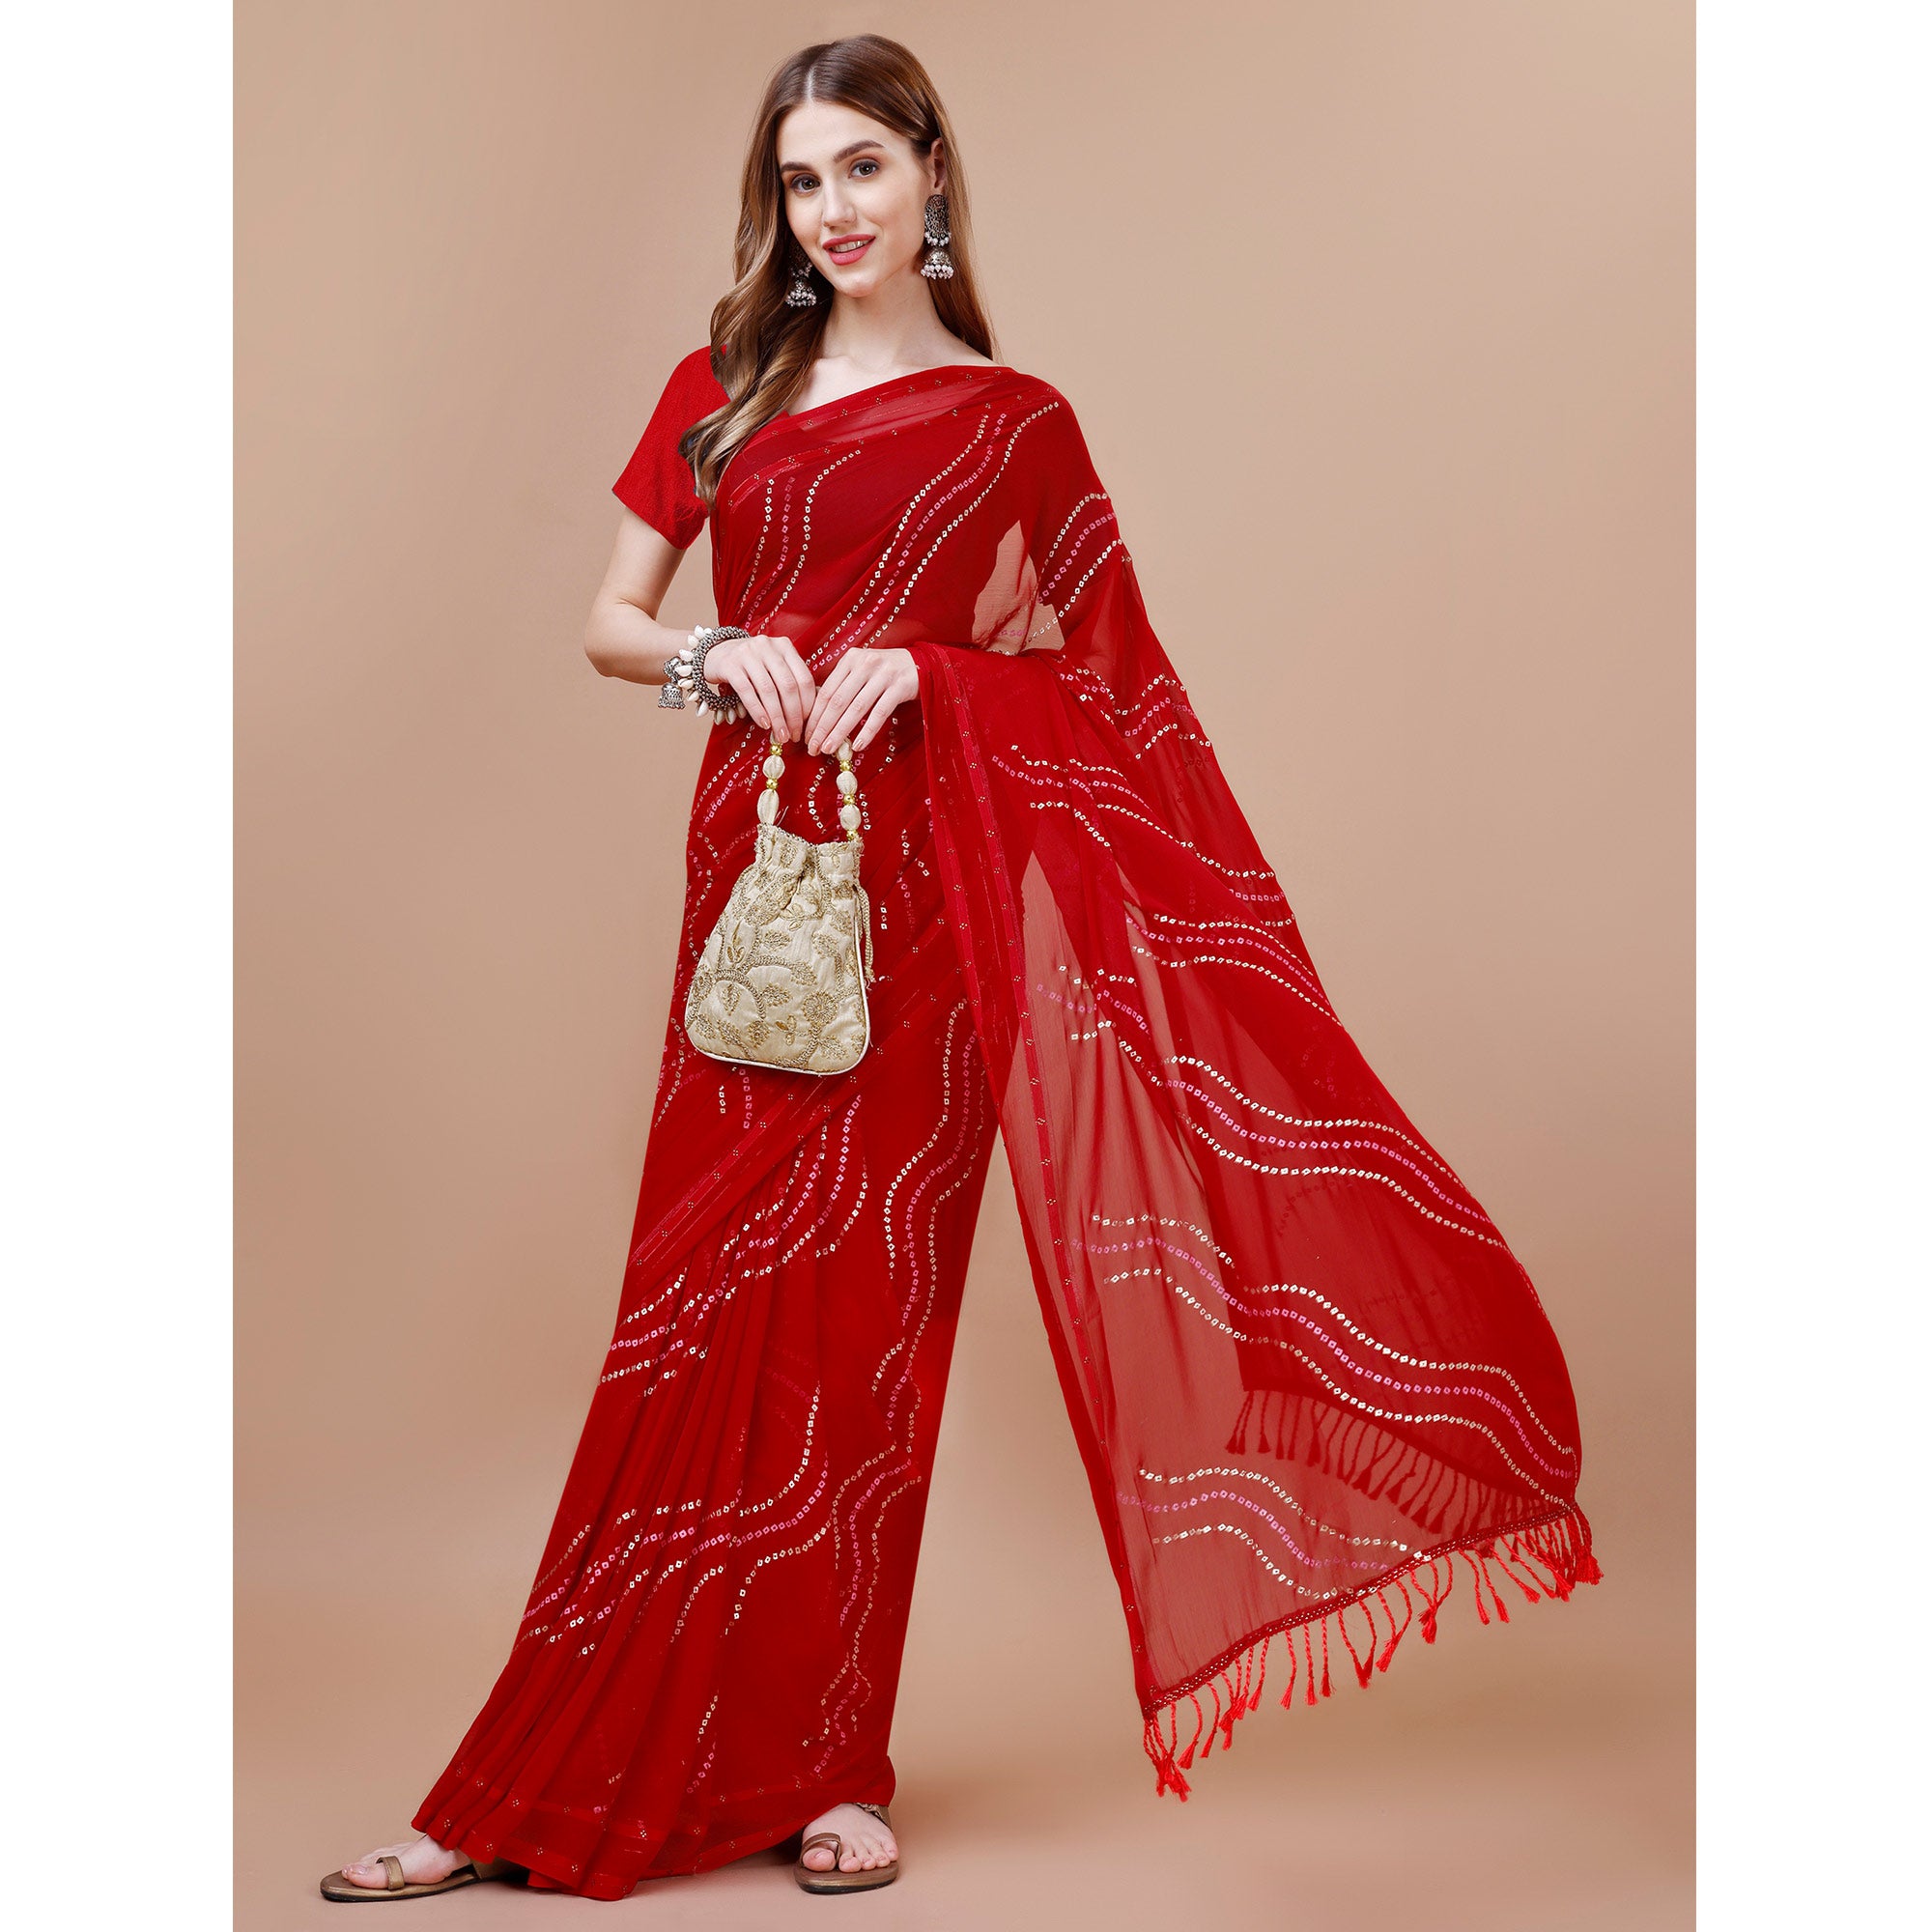 Red Bandhani Printed Chiffon Saree With Tassels